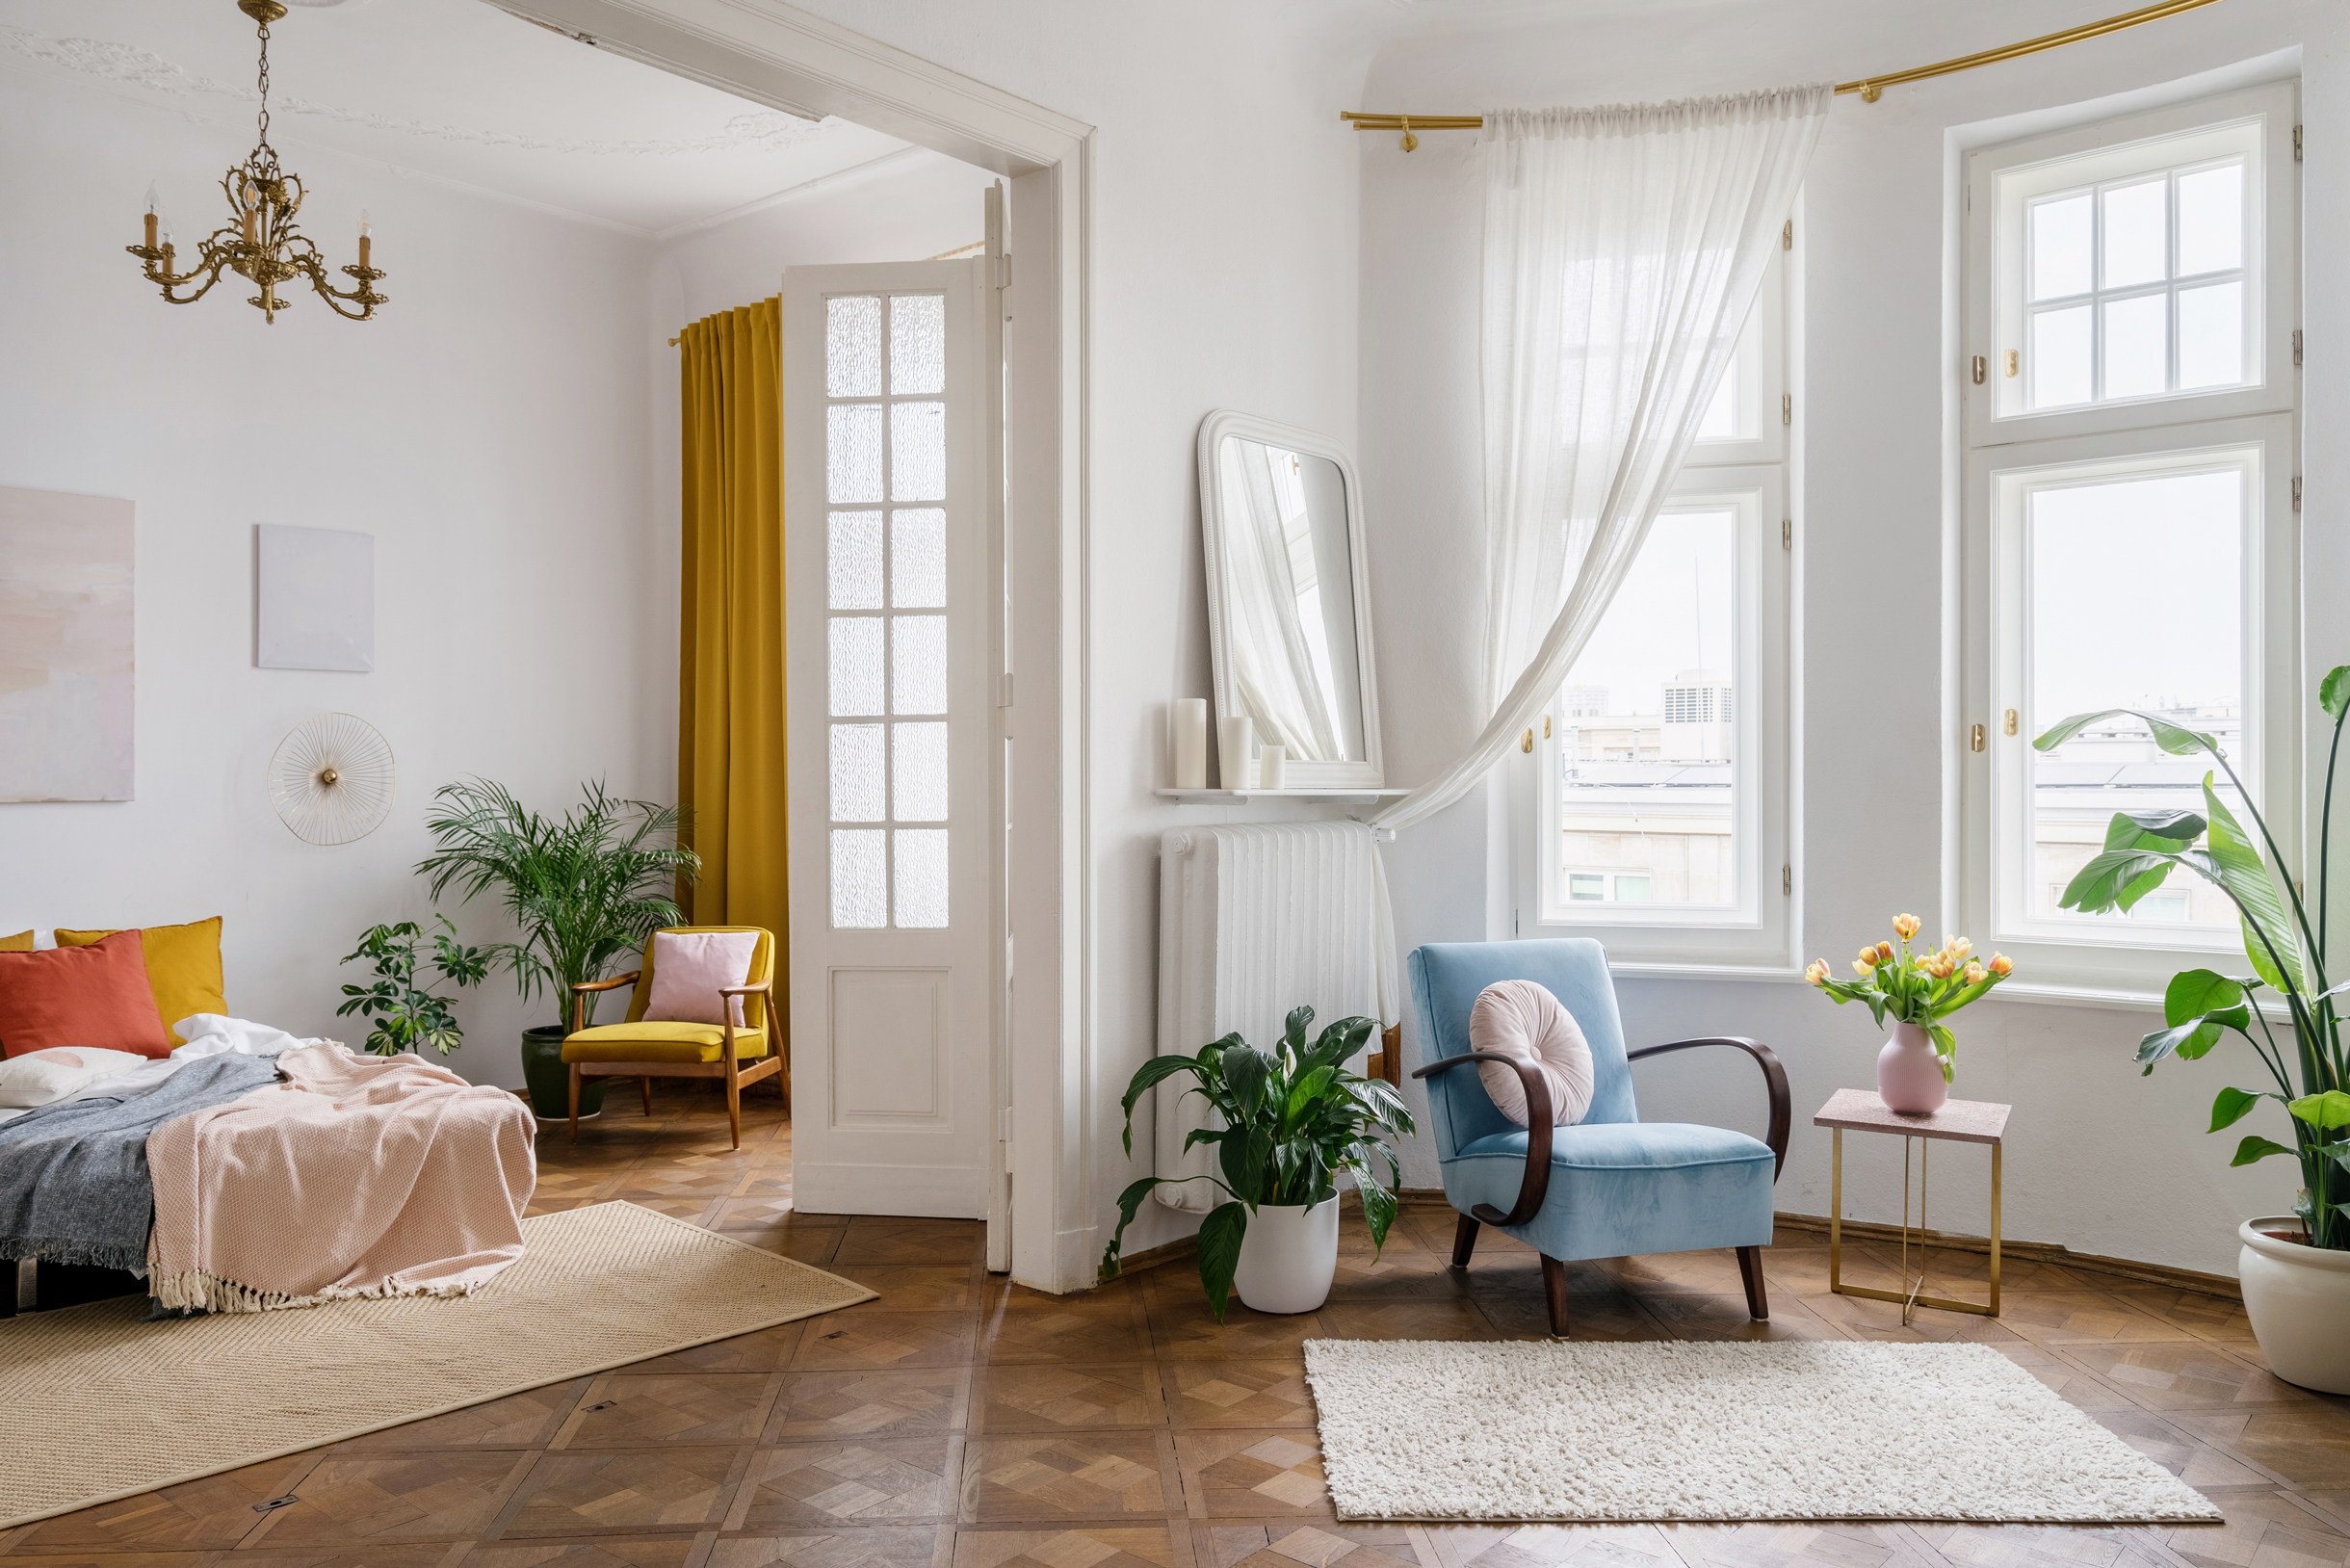 В спальне хорошо смотрятся яркие шторы и декоративные подушки. Можно повесить ретролюстру над кроватью и дополнить интерьер винтажным креслом. Фотография: brizmaker / Shutterstock / FOTODOM